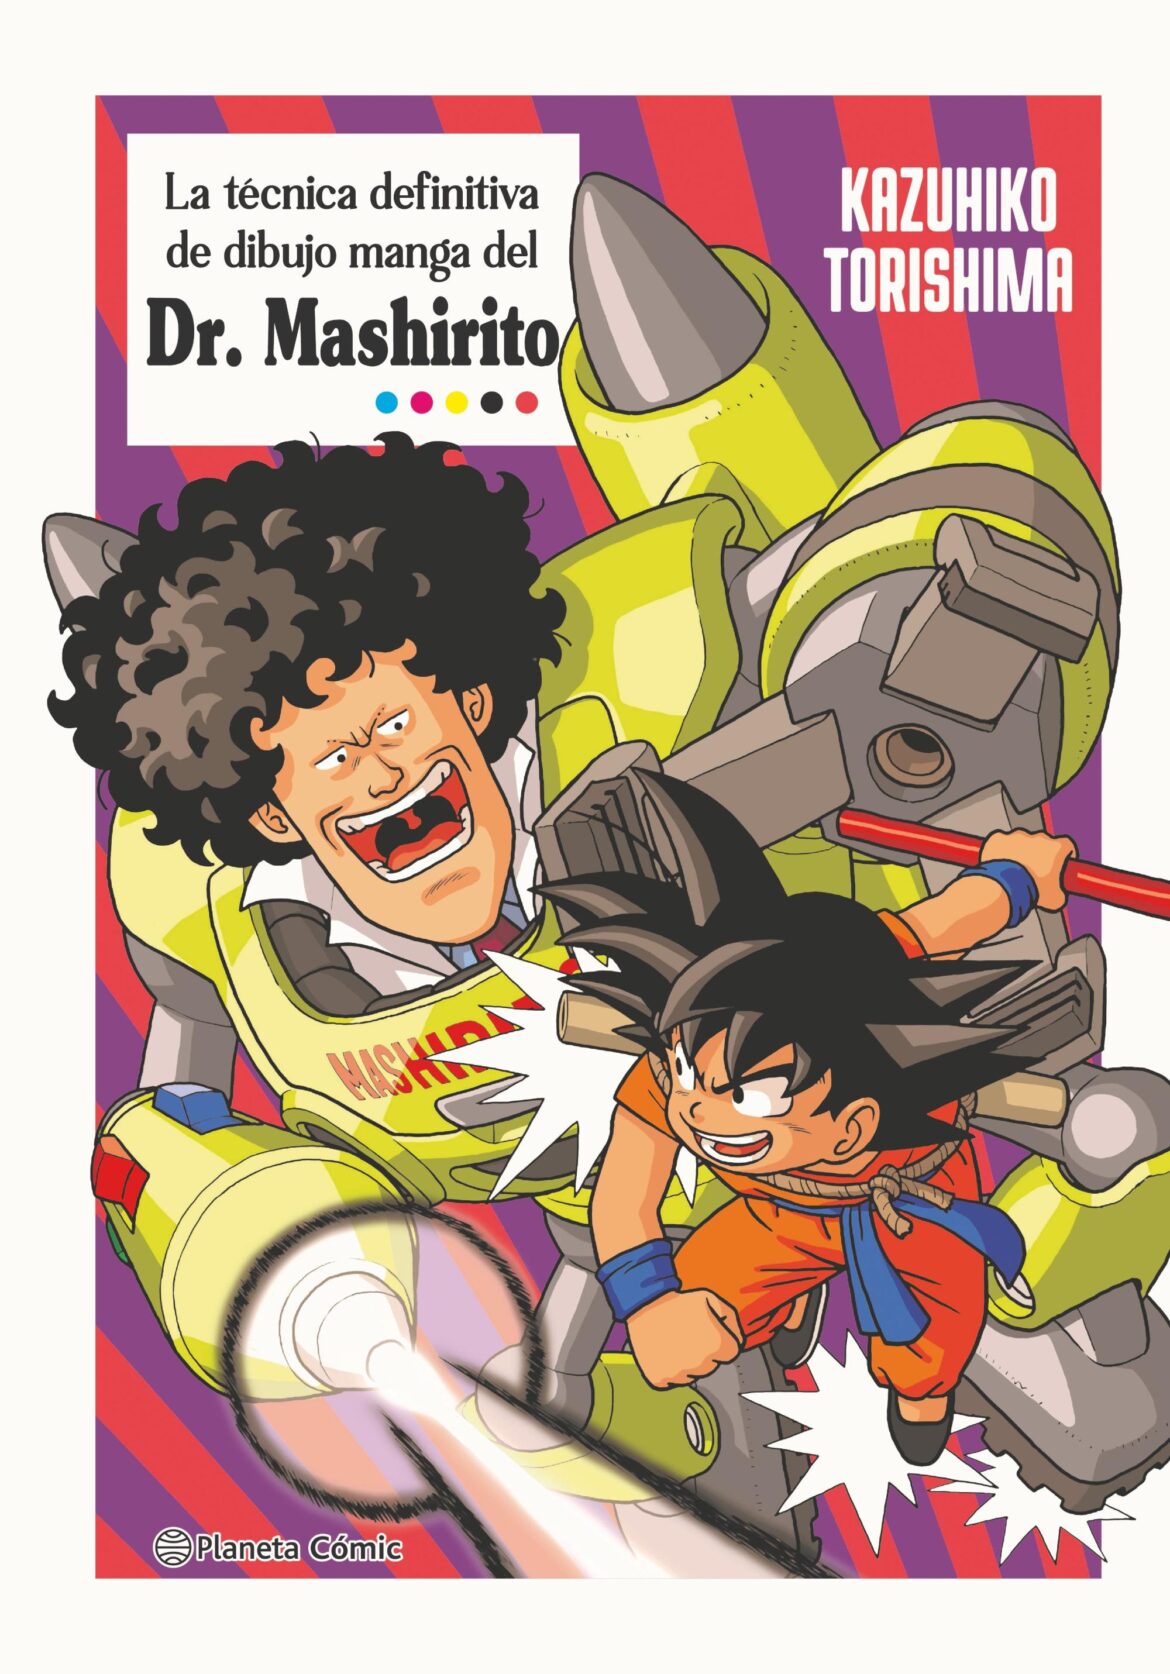 La técnica de dibujo manga definitiva del Dr. Mashirito